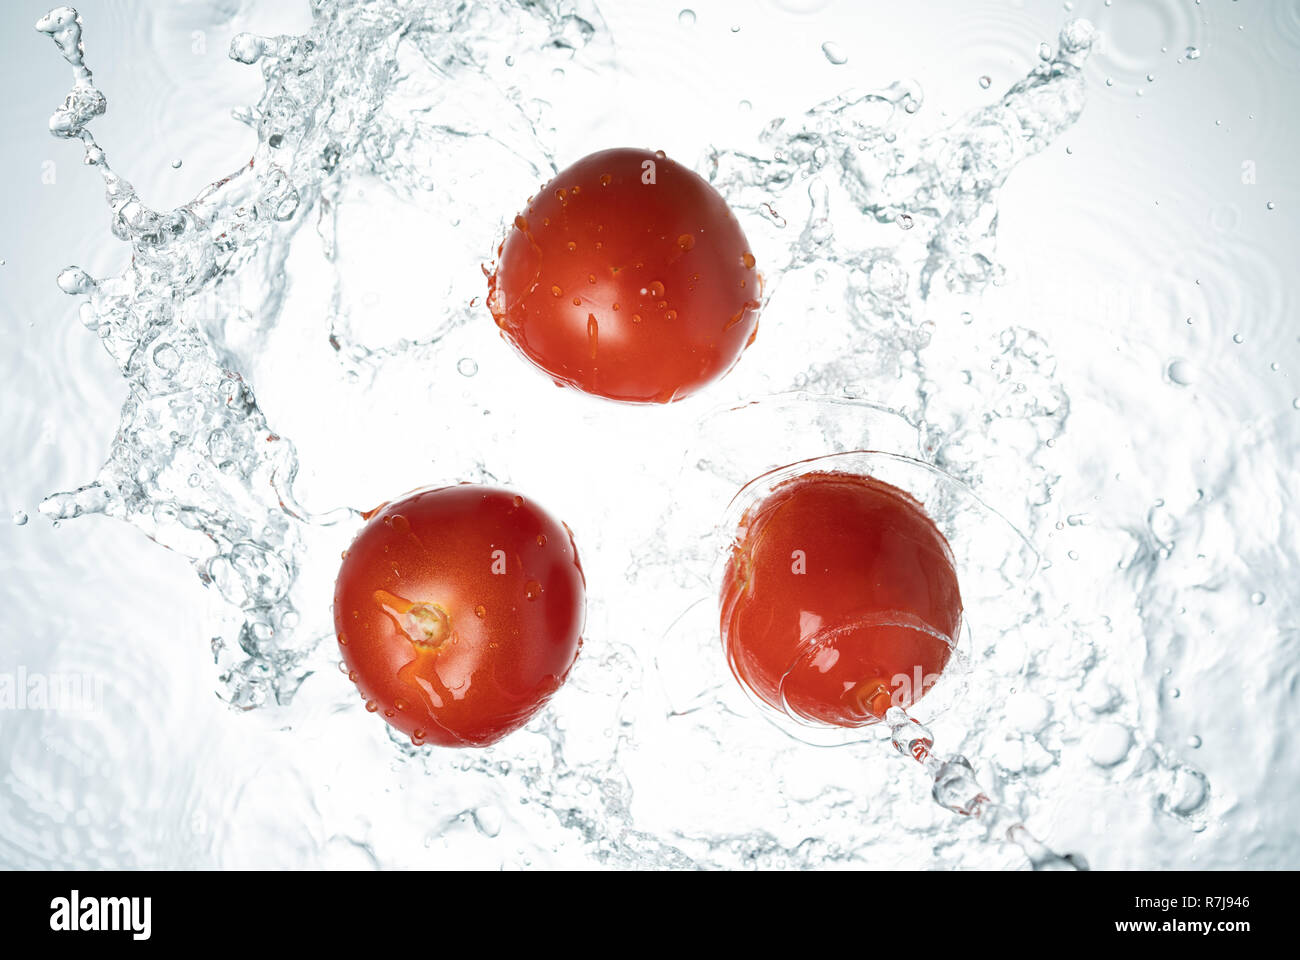 Les tomates les éclaboussures d'eau sur fond blanc Banque D'Images